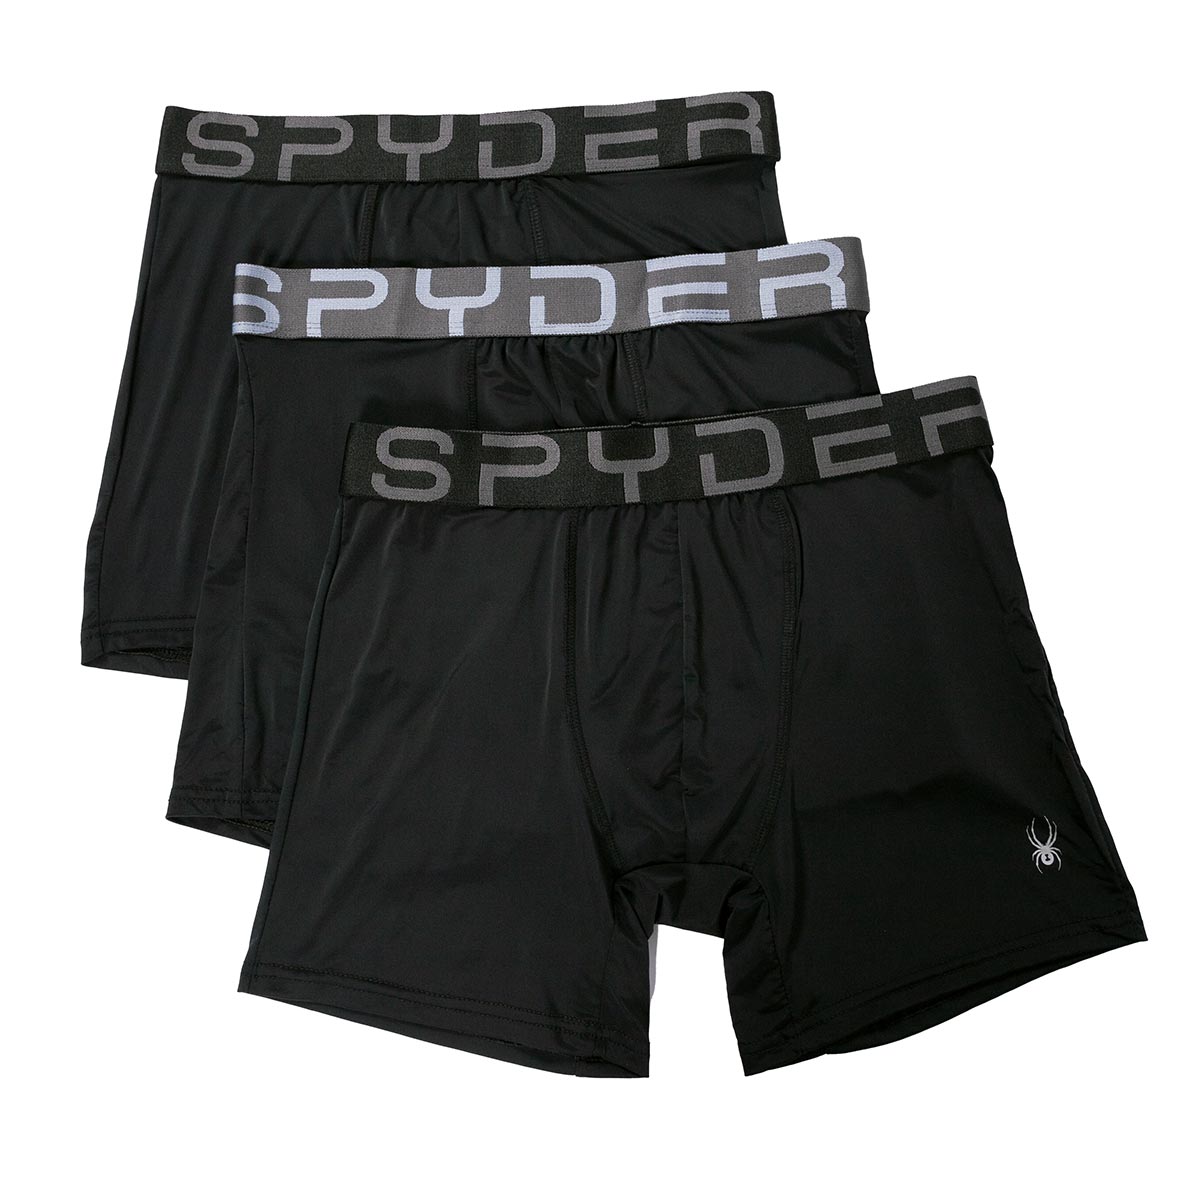 Image of Spyder Men's 3-Pack Nylon Boxer Briefs